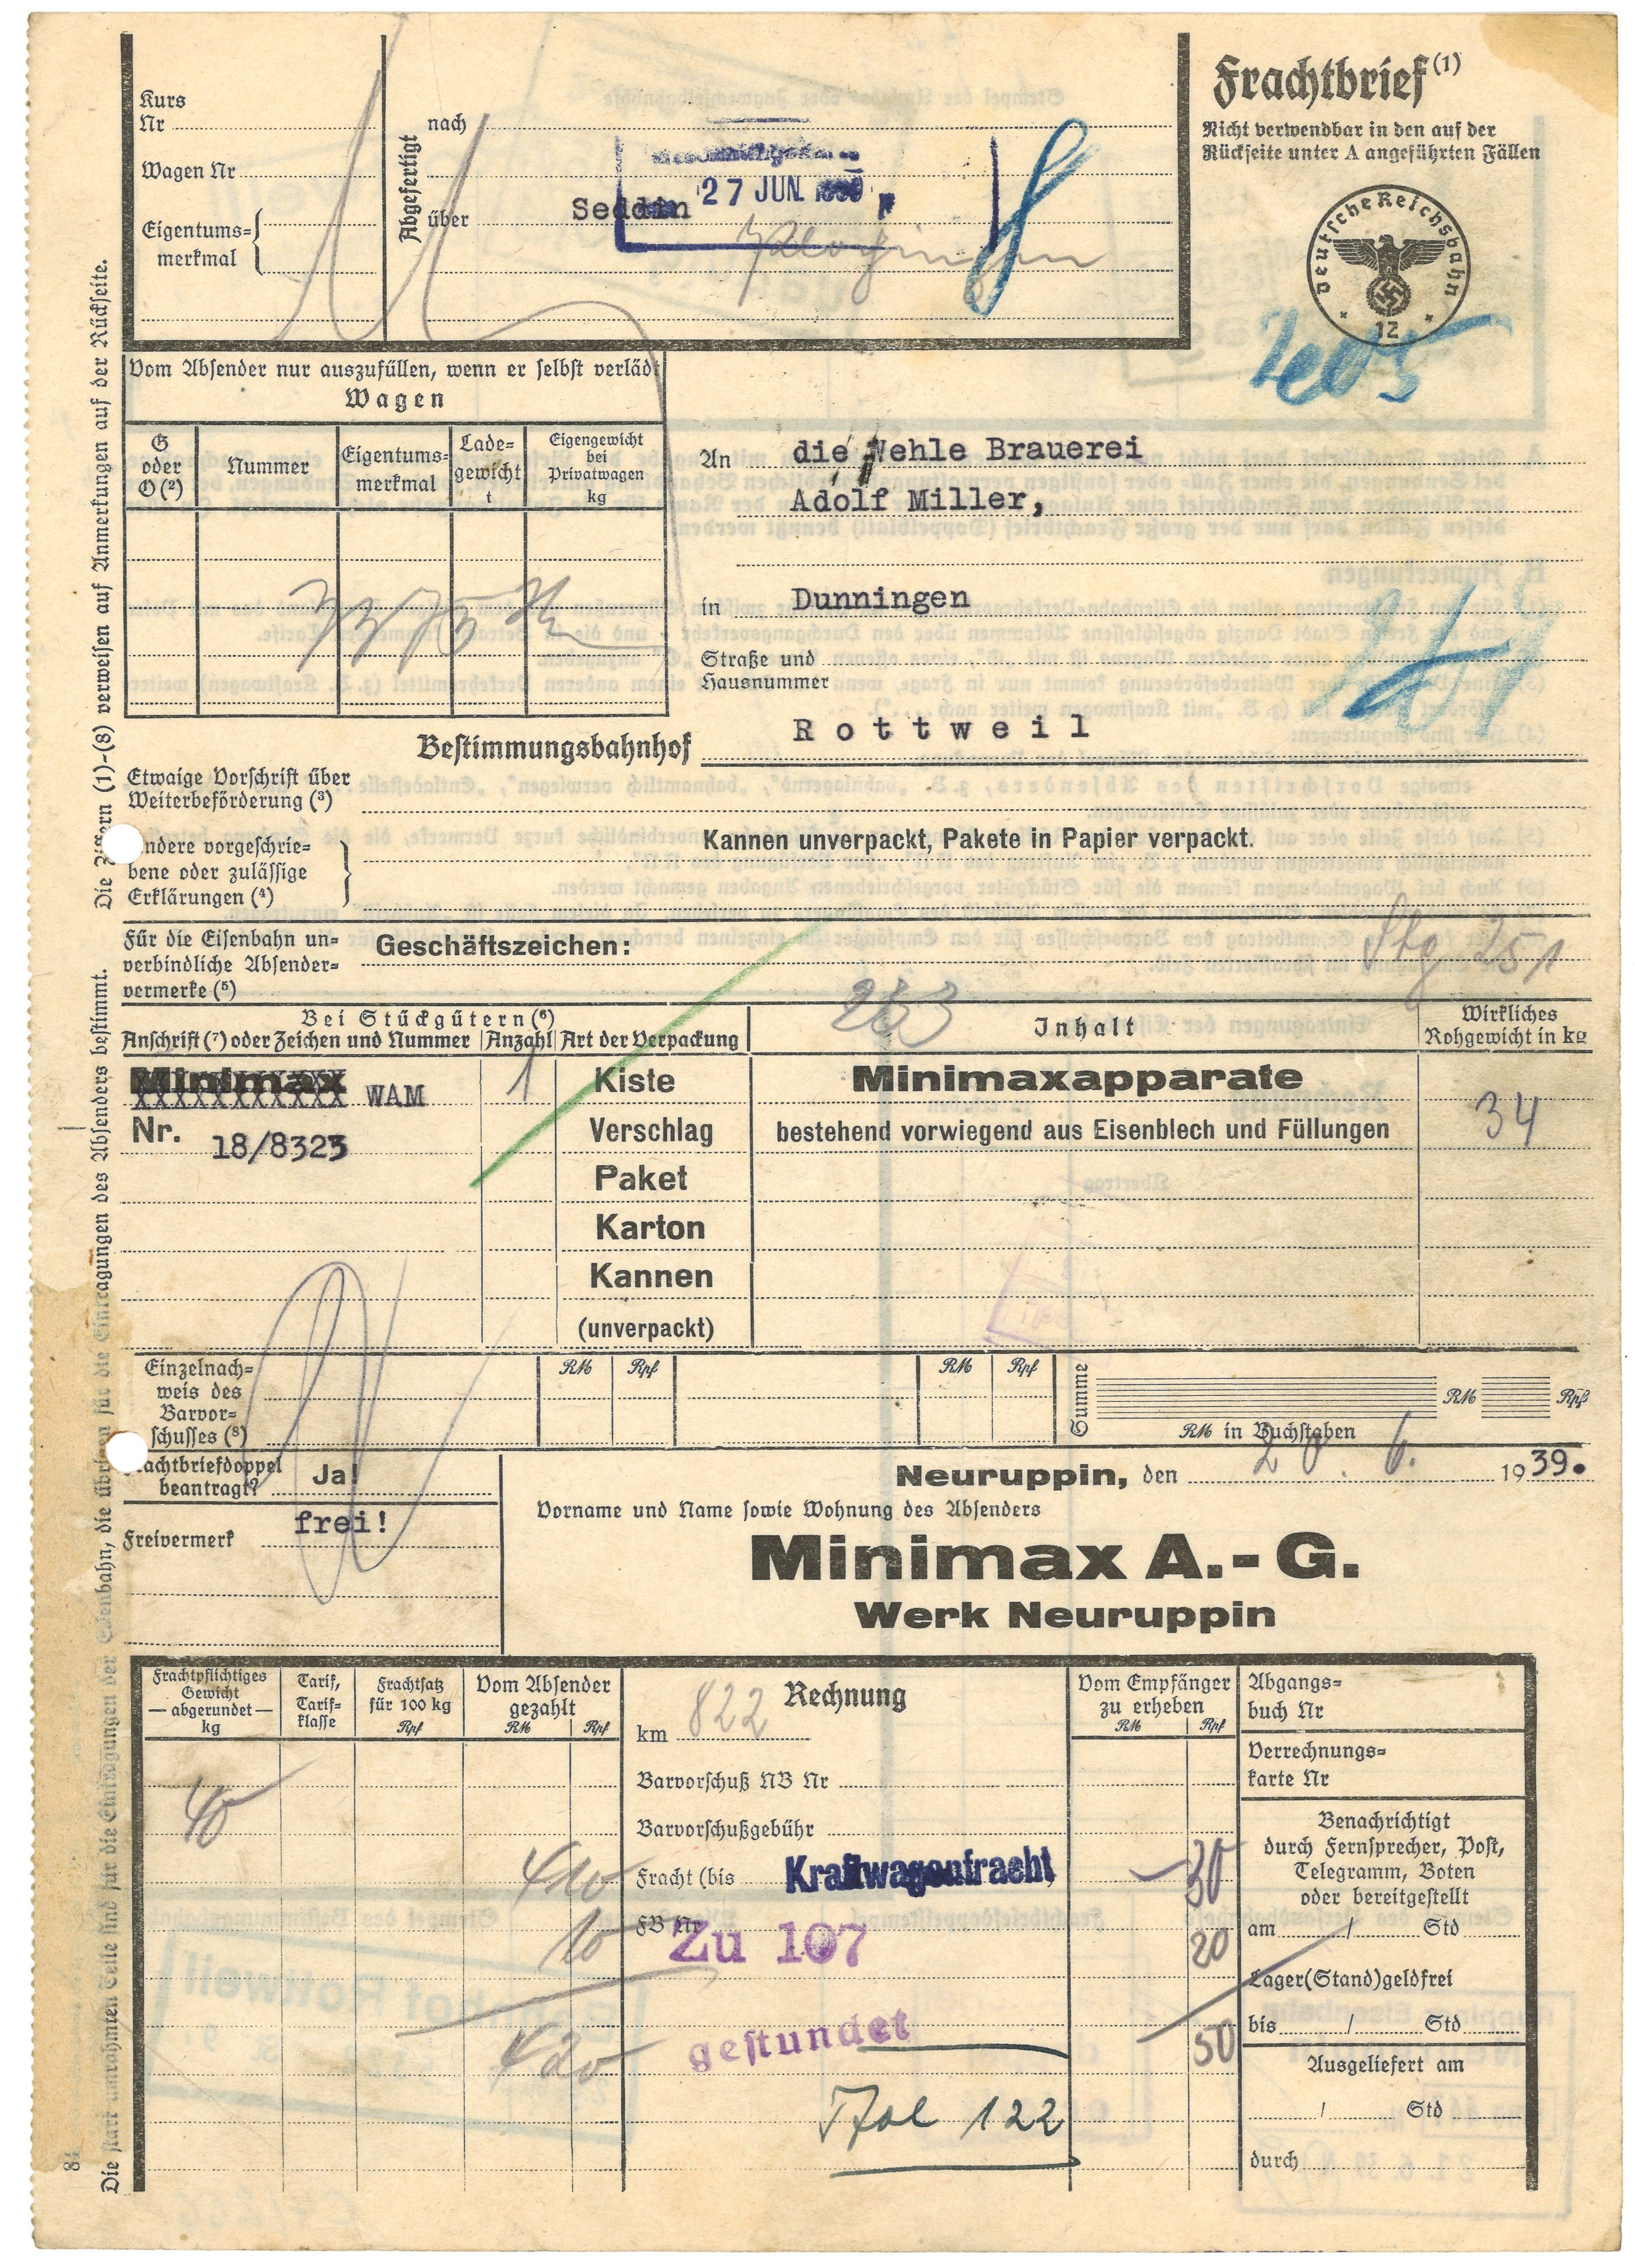 Frachtbrief der Minimax AG in Neuruppin 1939 (Landesgeschichtliche Vereinigung für die Mark Brandenburg e.V., Archiv CC BY)